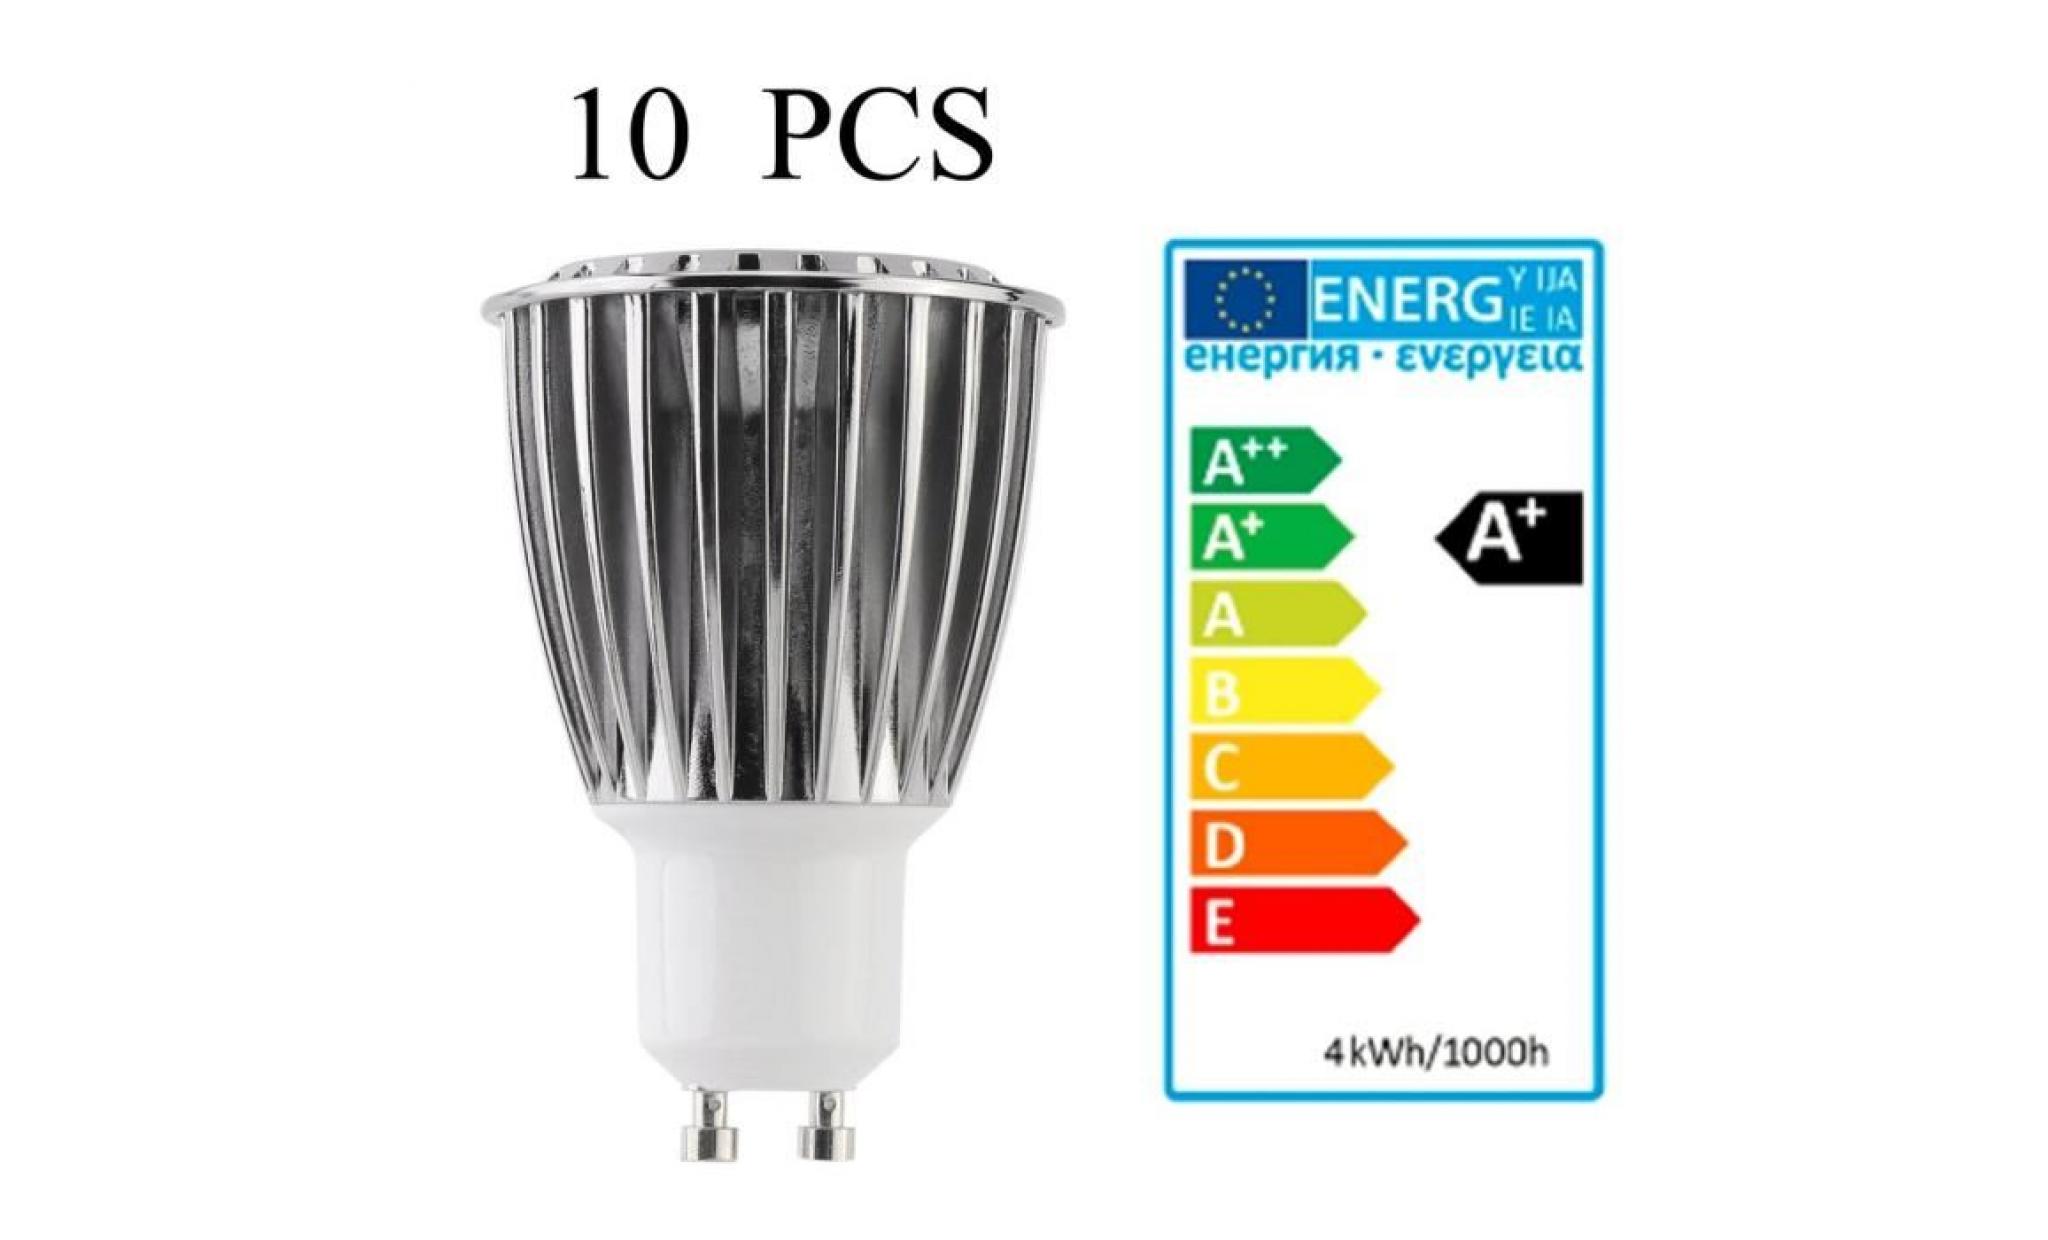 10 pcs ampoules super bright led 9w économie d'énergie dimmable 200 240v ac   9w   6000k   5 * 5 * 7.5cm